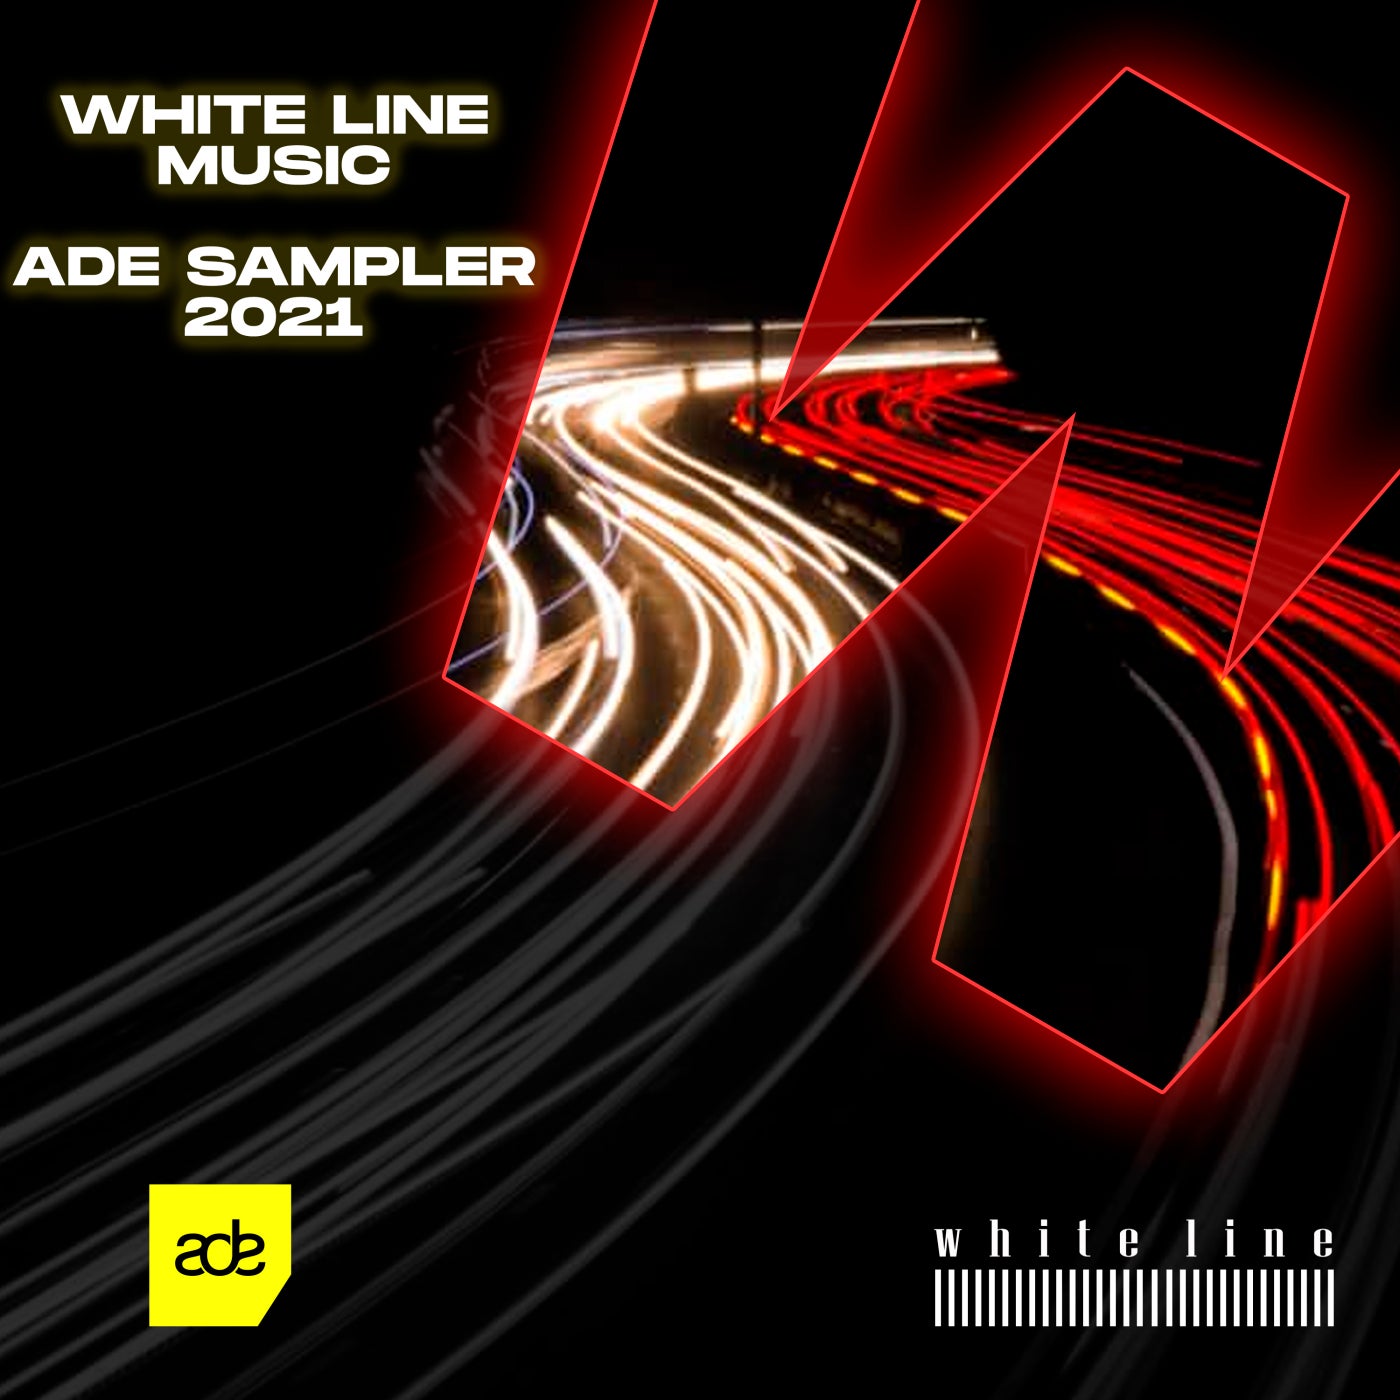 White Line Music ADE Sampler 2021